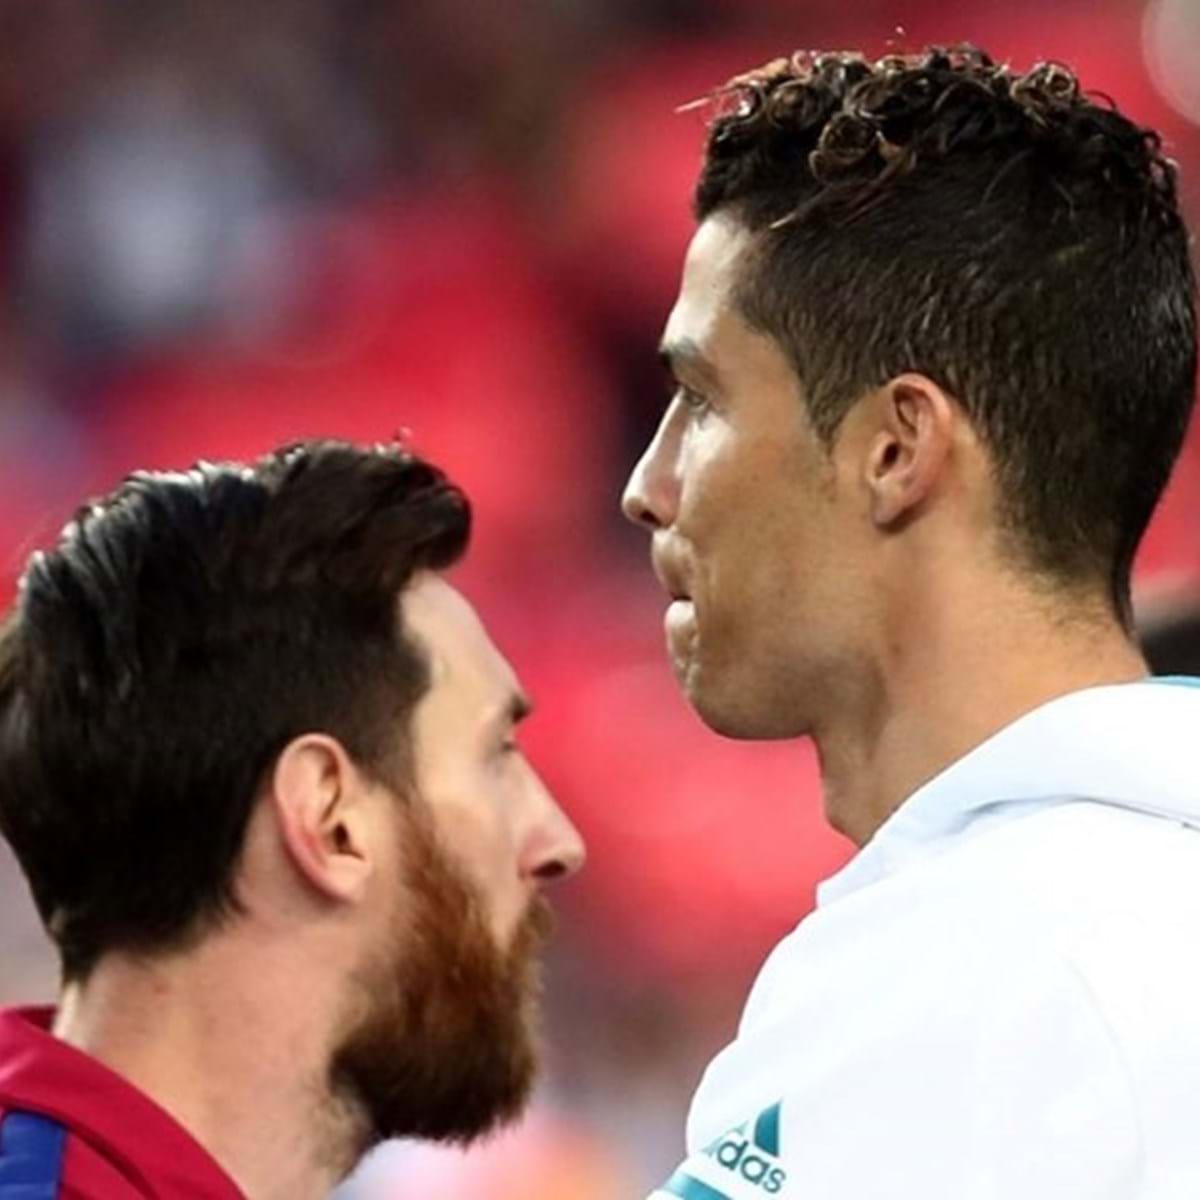 Pjanic jogou com um, agora joga com outro: O Cristiano Ronaldo é um atleta  mas o Messi é um extraterrestre - Liga dos Campeões - SAPO Desporto